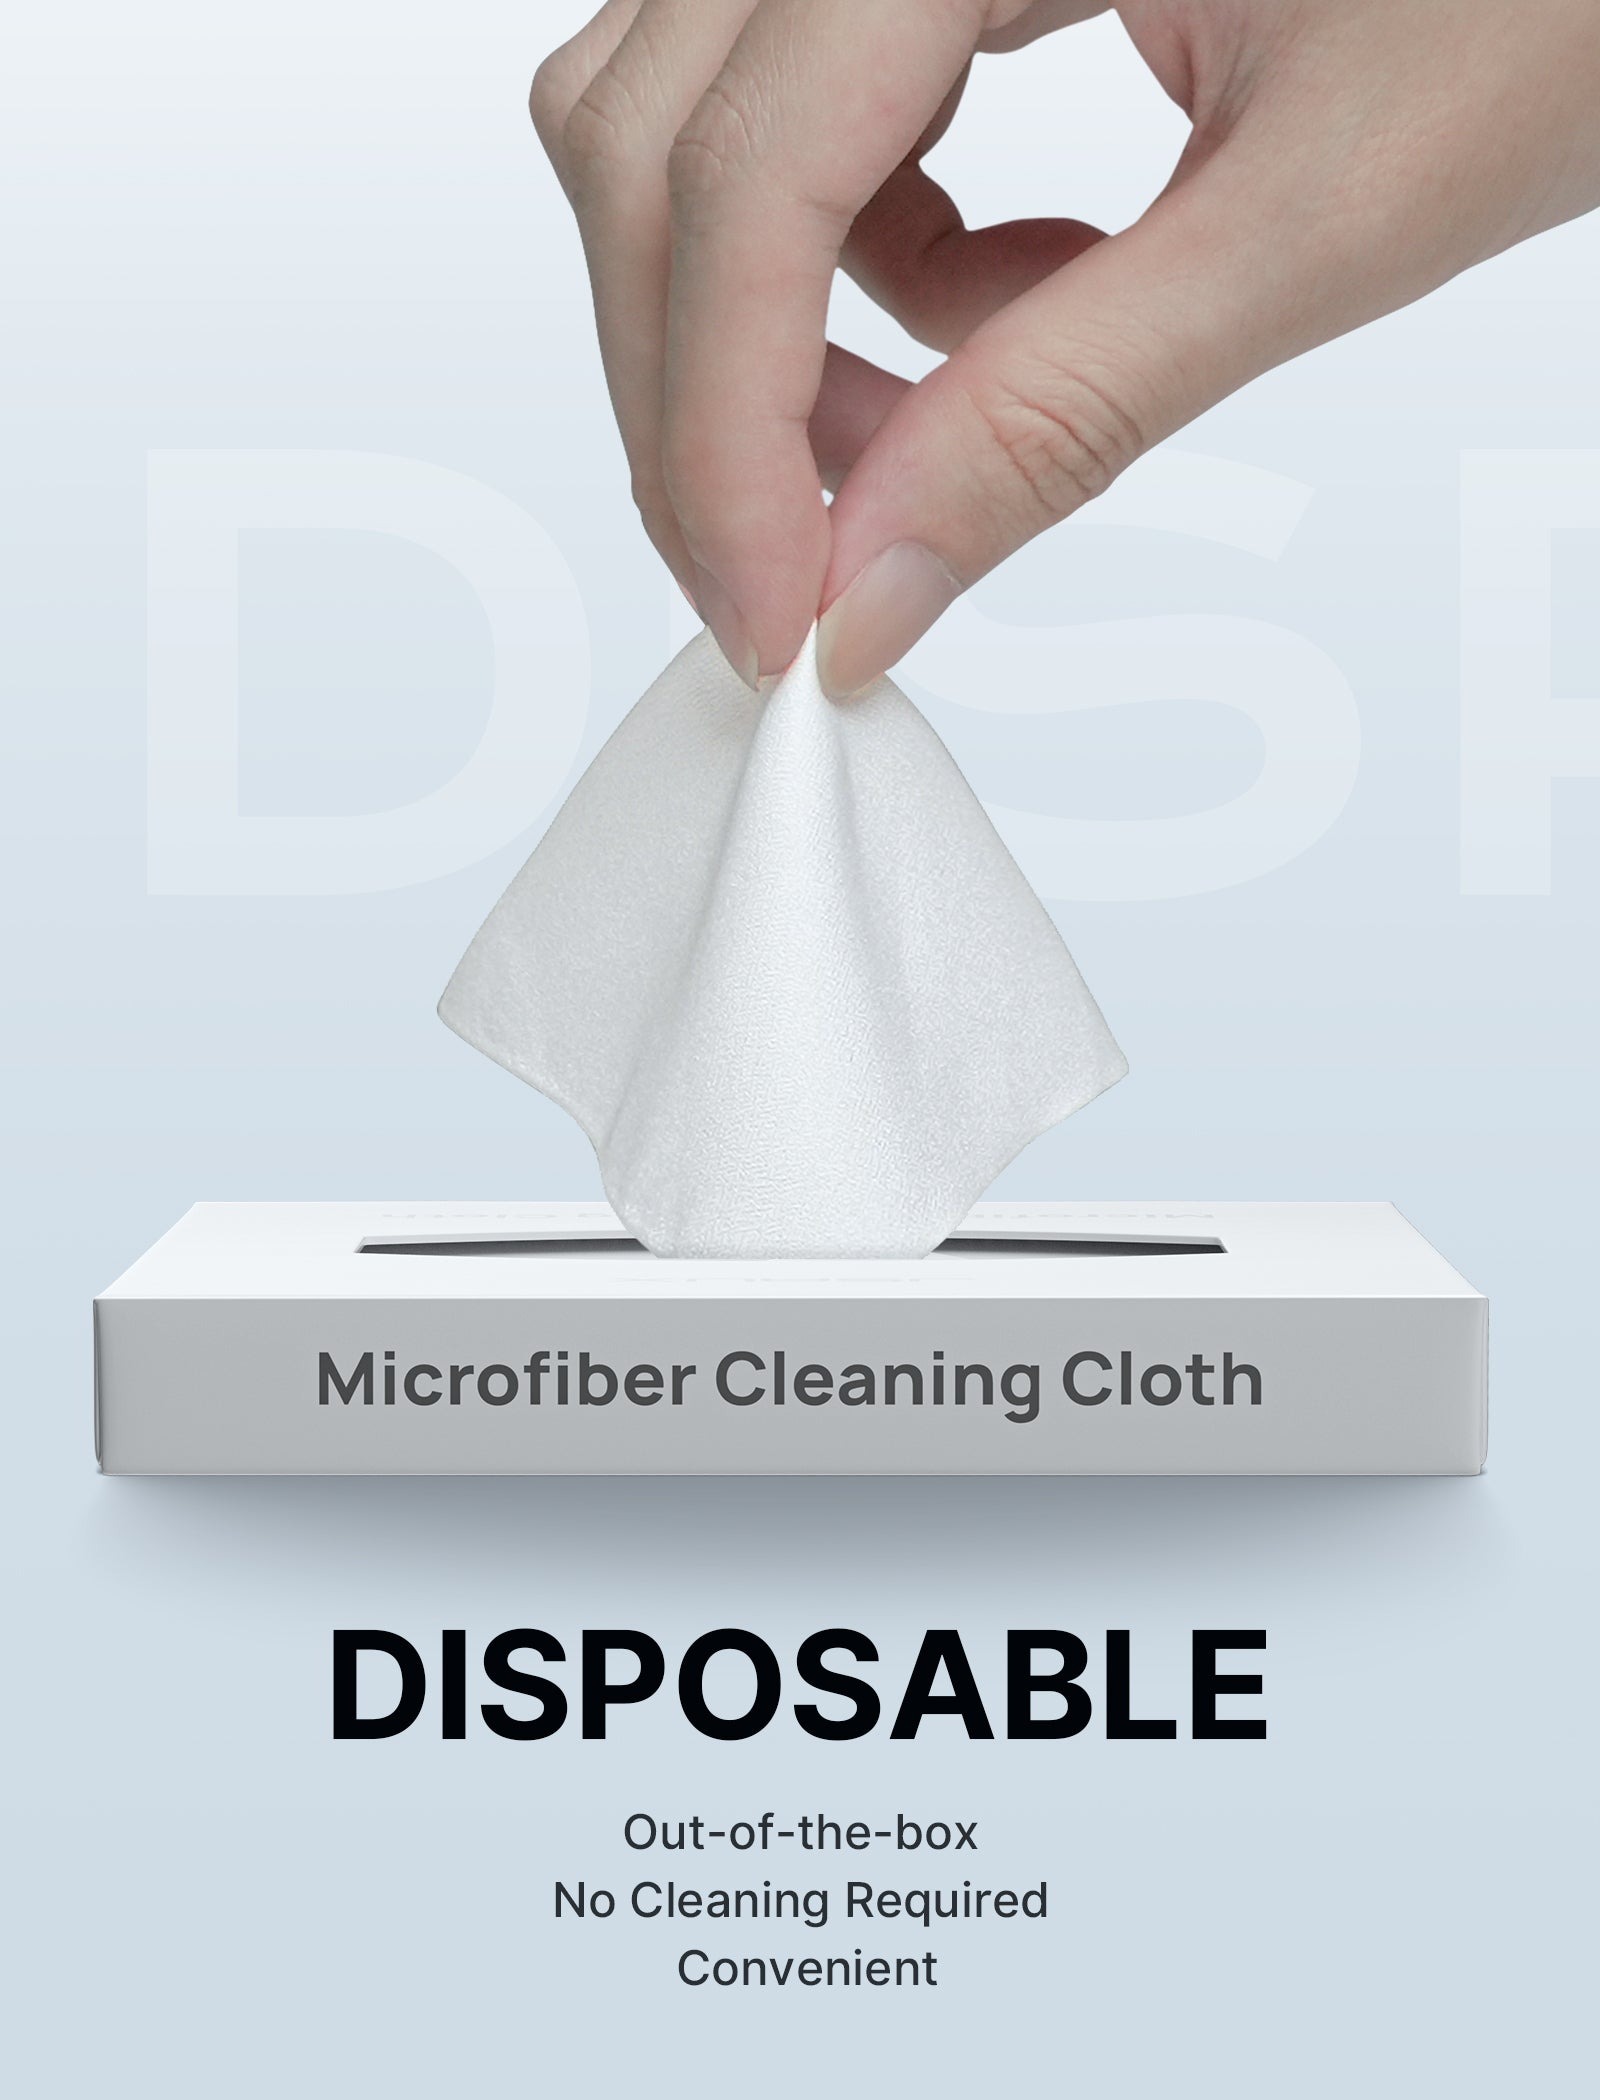 JSAUX Microfibre Cleaning Cloth(1Pcs)